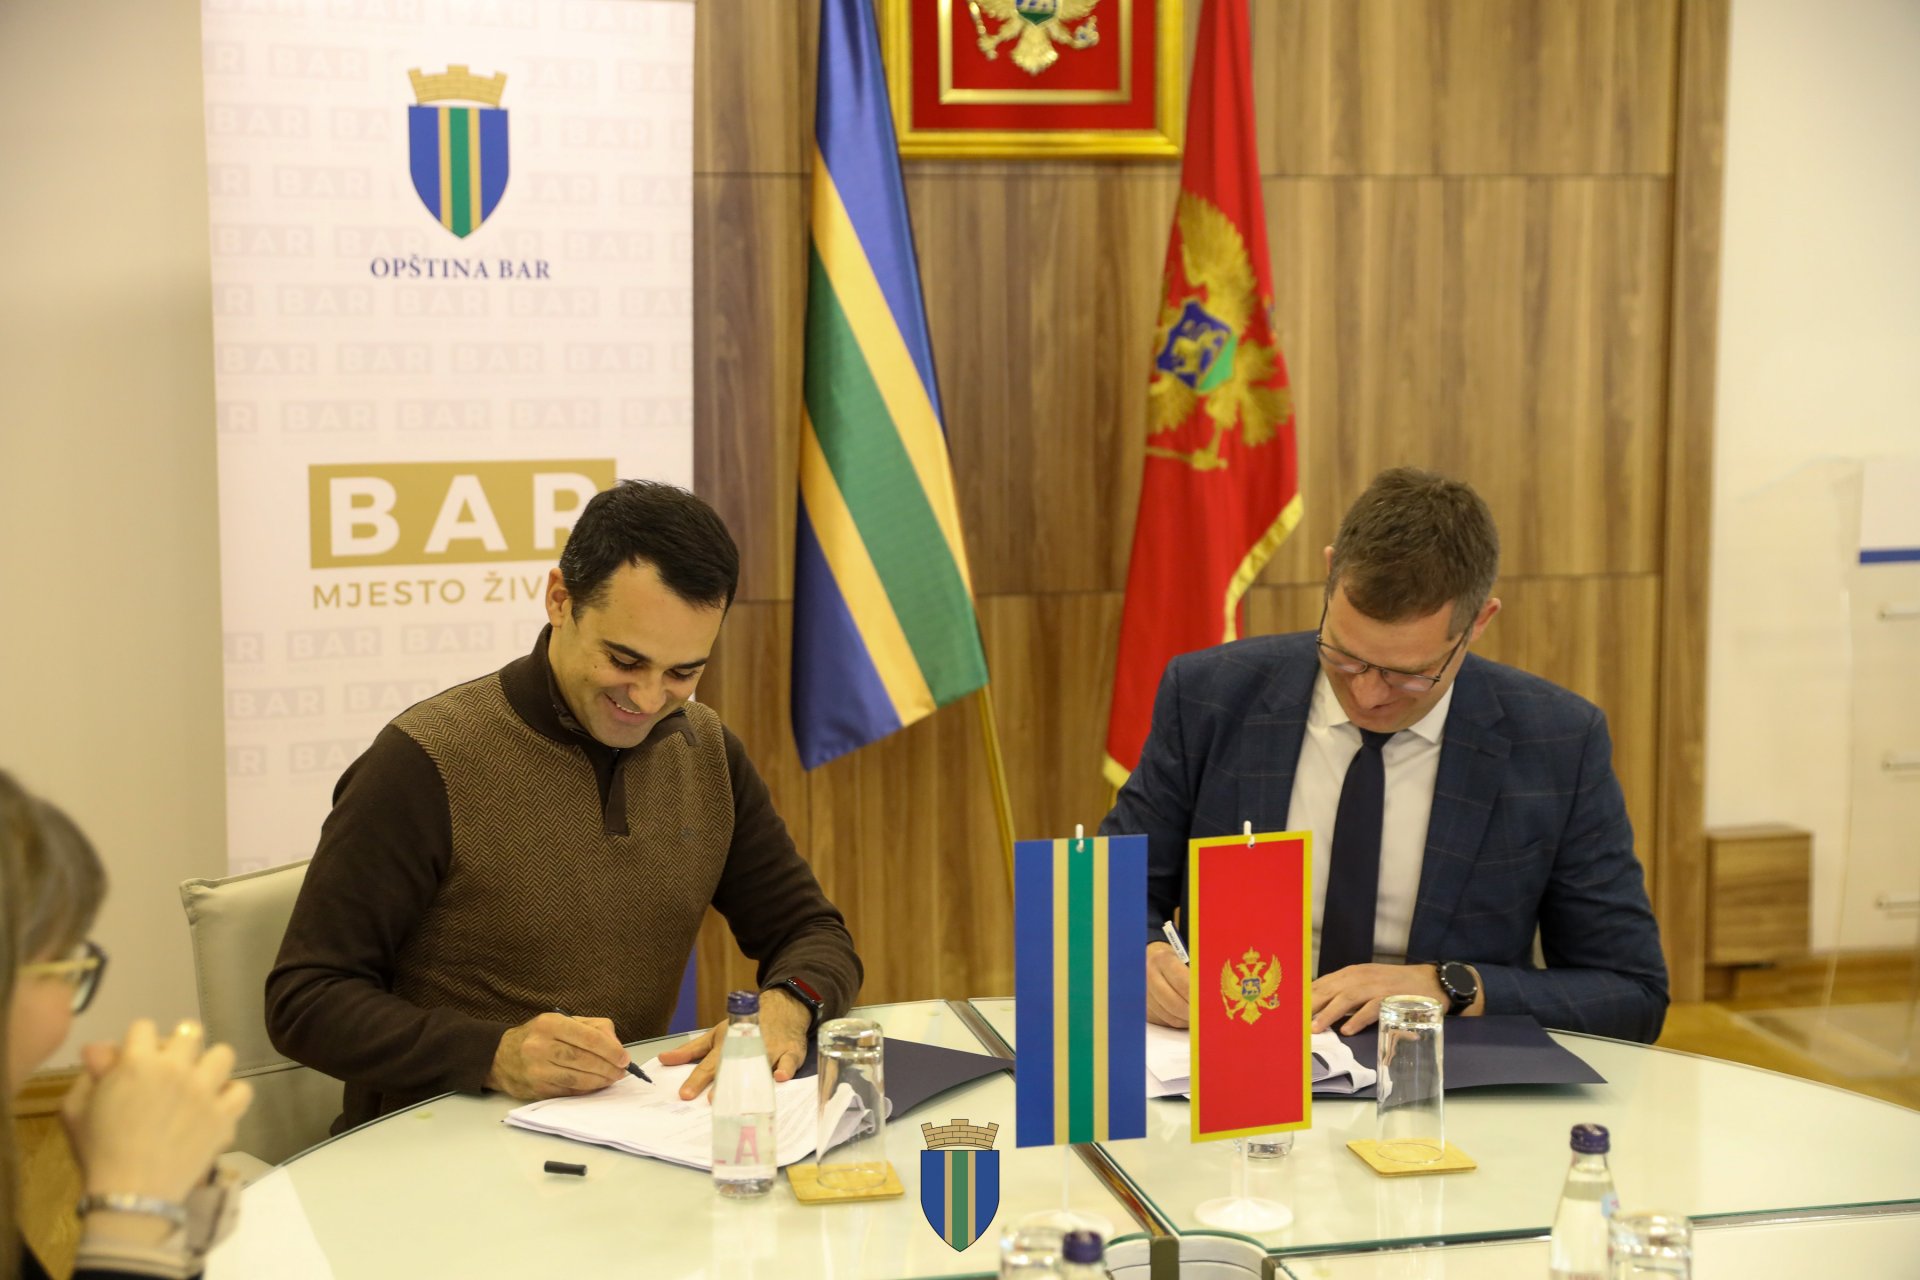 Eko-fond i Opština Bar potpisali ugovor o nabavci komunalne opreme